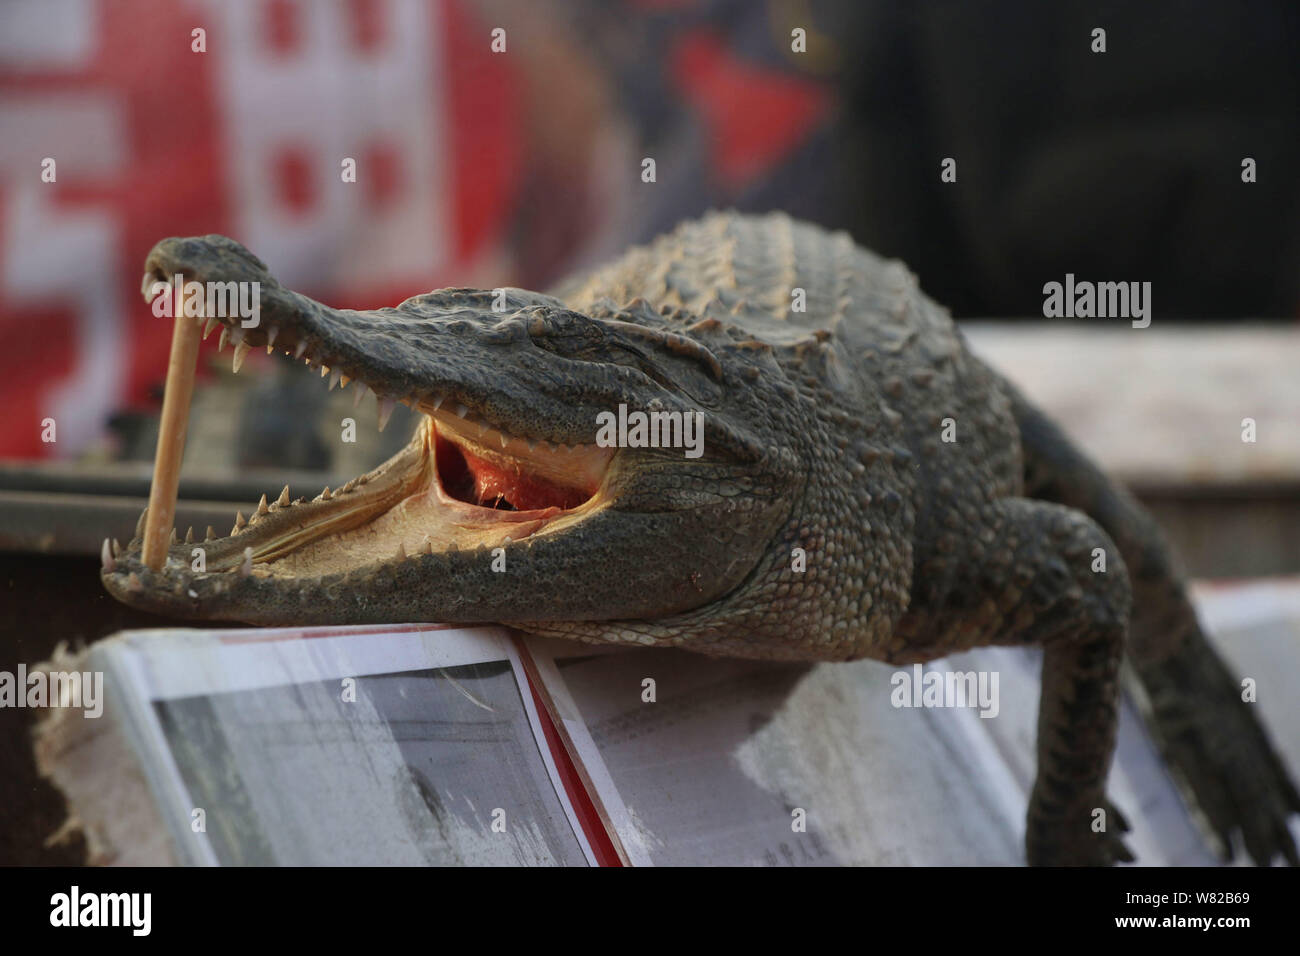 Un crocodile est exposée au food vente de viande de crocodile grillé lors d'une foire du temple au cours de la Nouvelle Année lunaire chinoise, également connu sous le nom de Spring Fe Banque D'Images